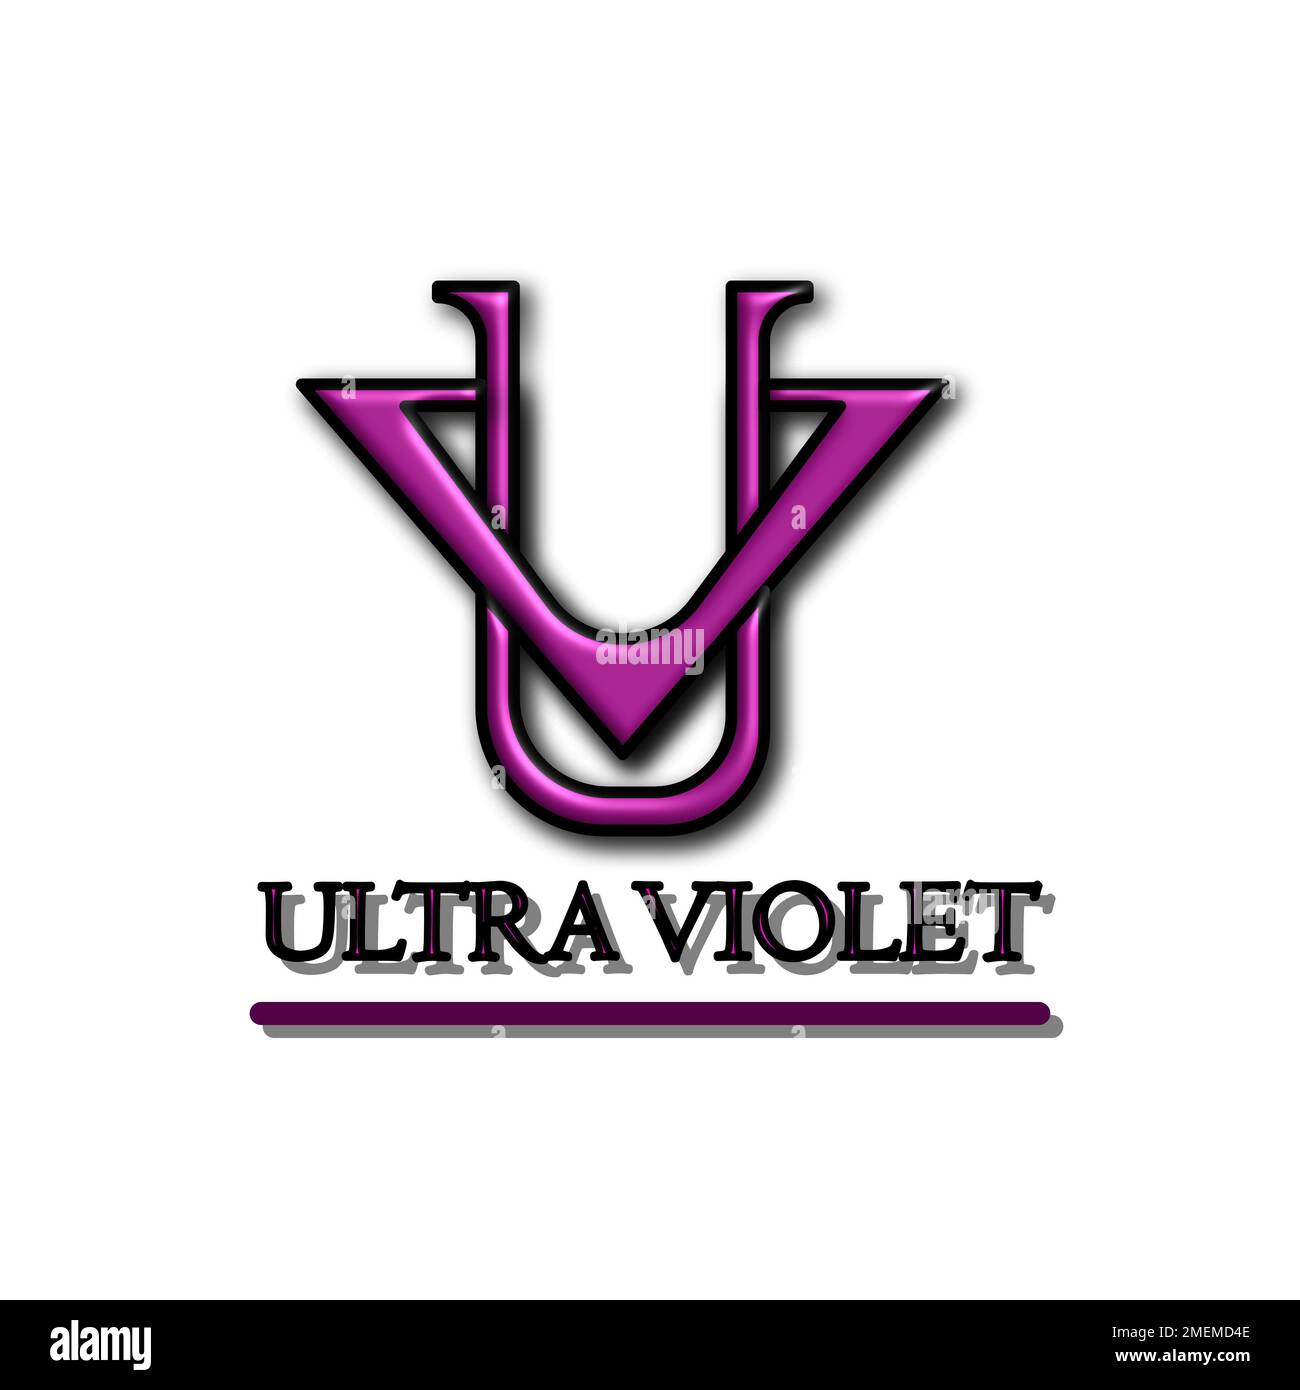 Disegno grafico del logo a forma di U e V con lettera di colore viola 3D. Perfetto per icone di abbigliamento, loghi aziendali, negozi e molto altro Foto Stock